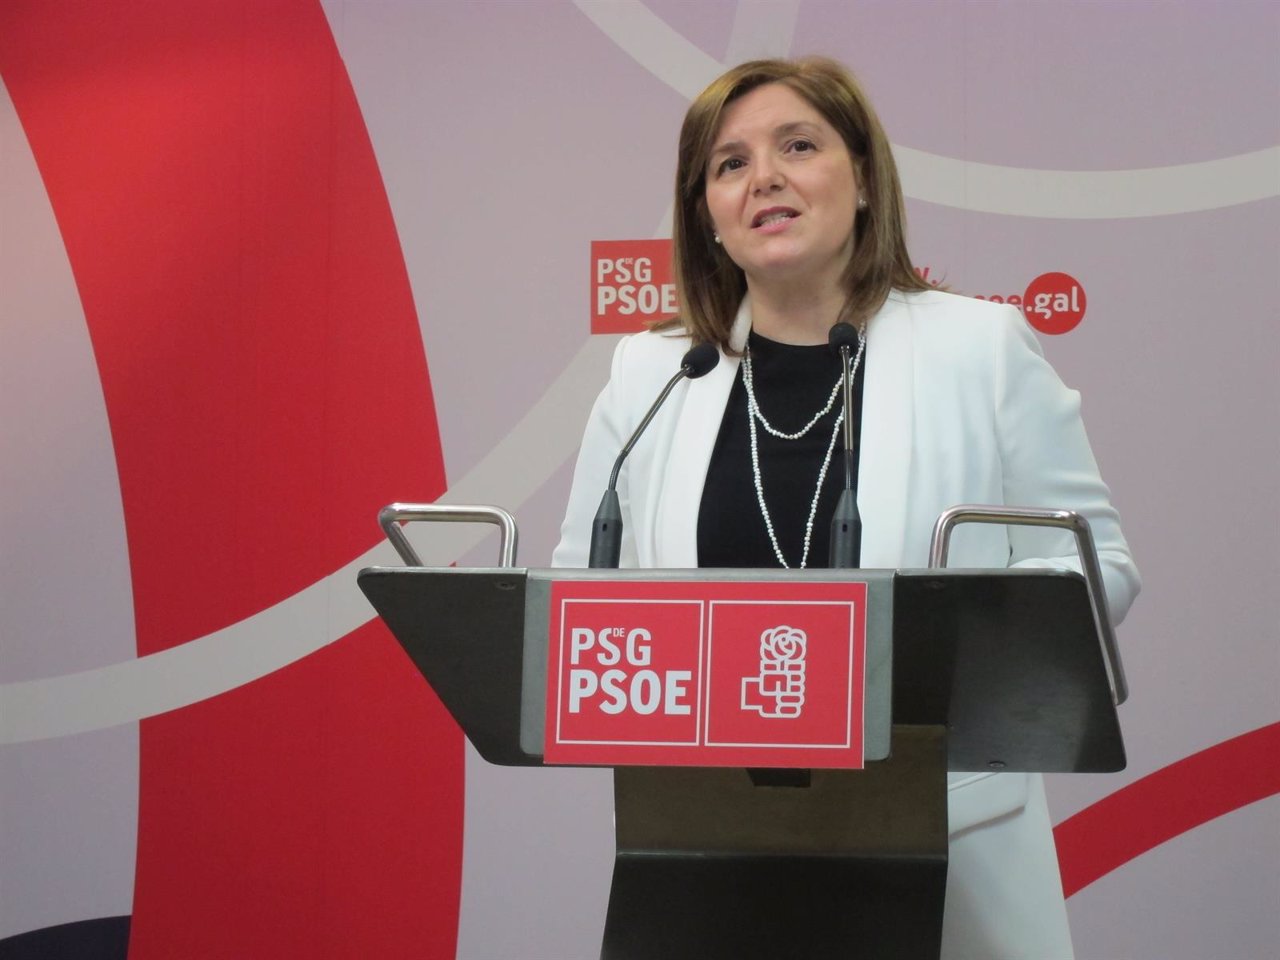 La presidenta de la gestora del PSdeG, Pilar Cancela